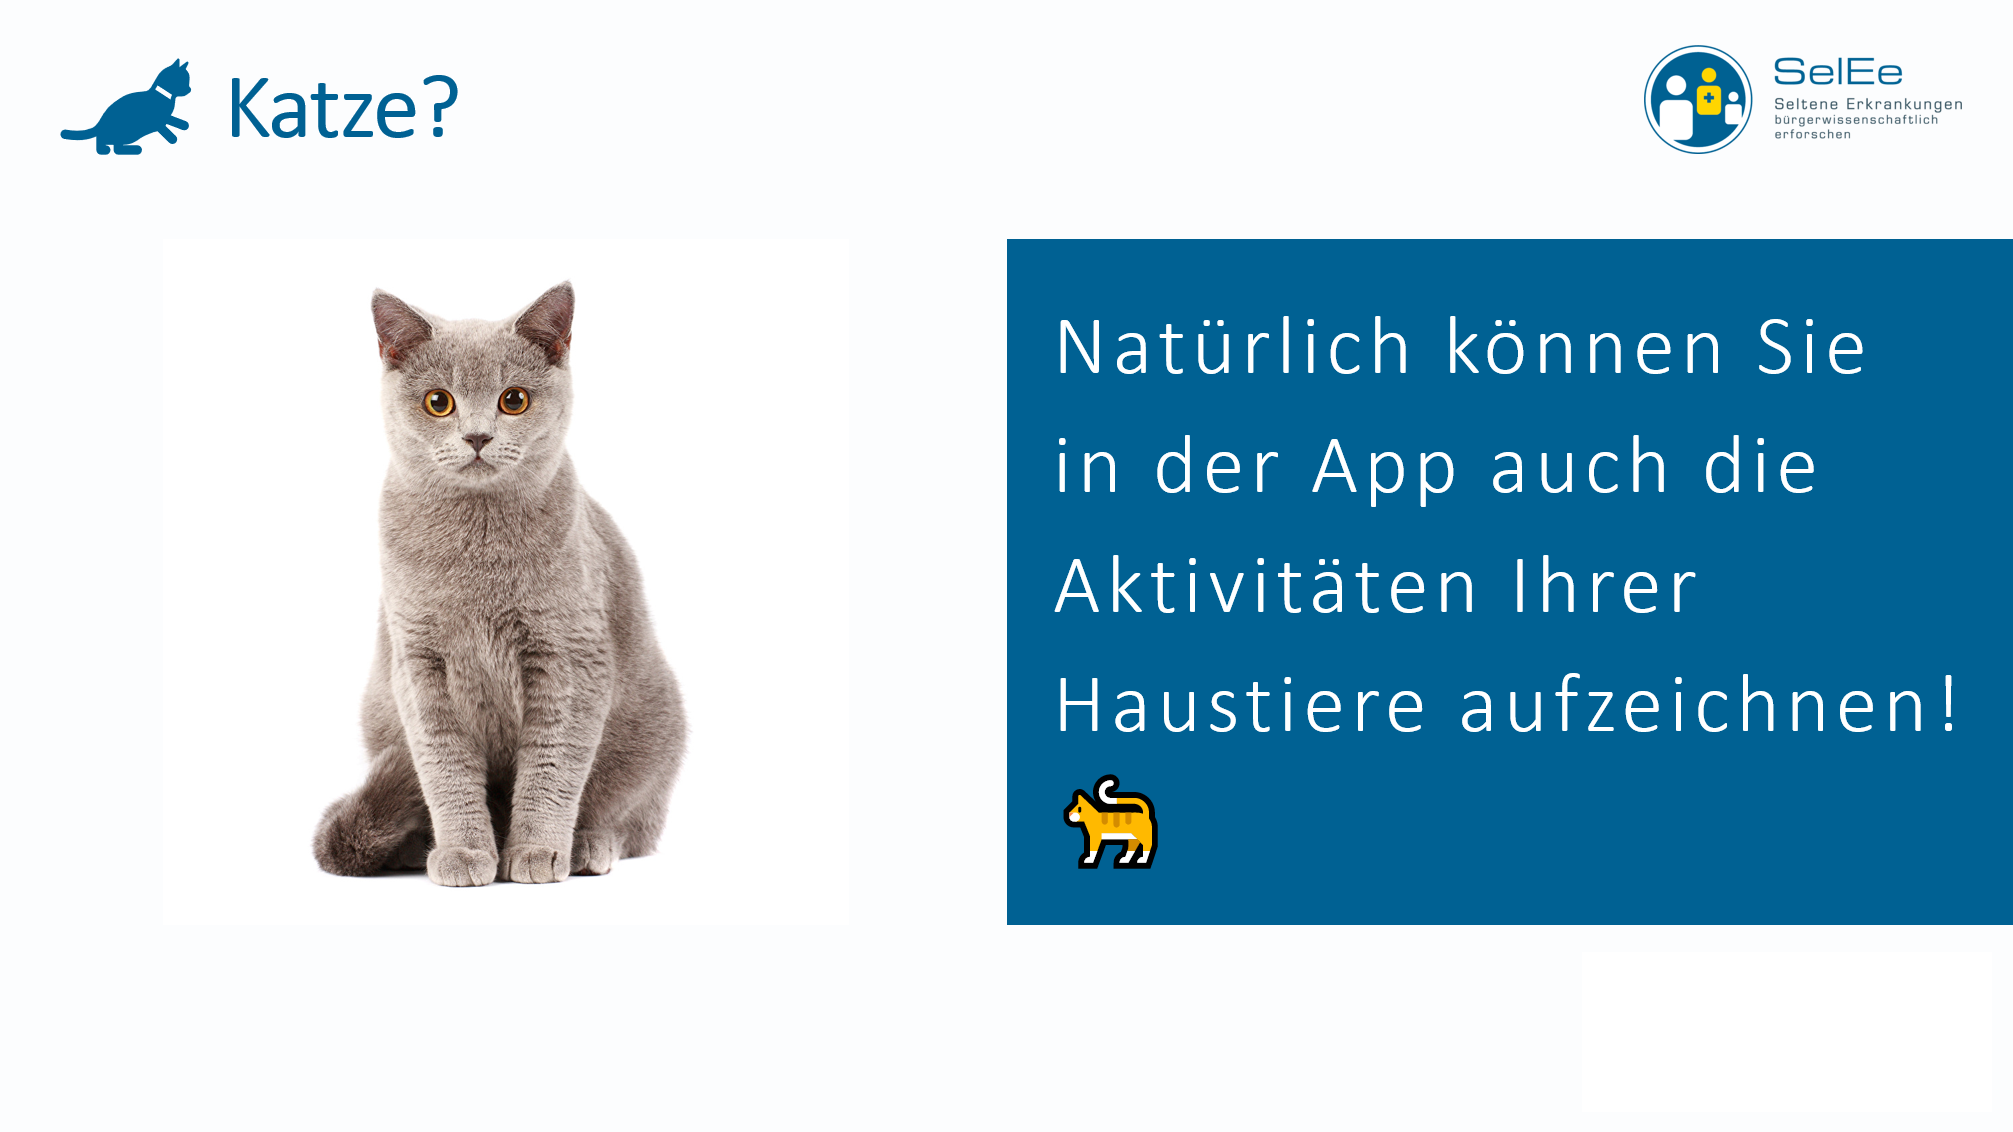 Bild einer Katze und folgender Text: Natürlich können Sie in der App auch die Aktivitäten Ihrer Haustiere aufzeichnen!